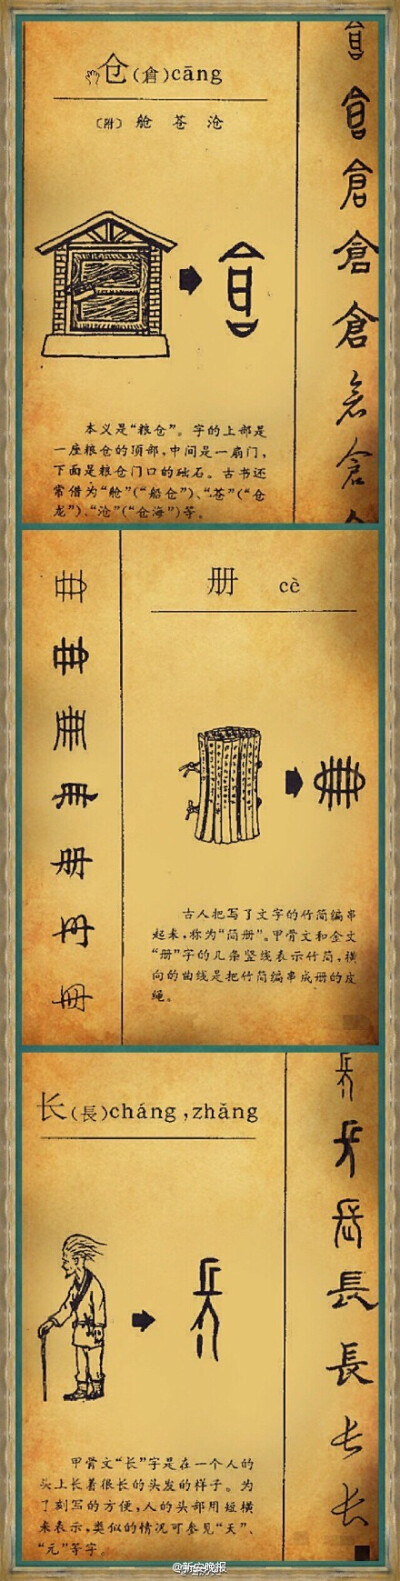 中华民族辉煌灿烂的历史与宝贵的智慧财富依靠汉字得以保存